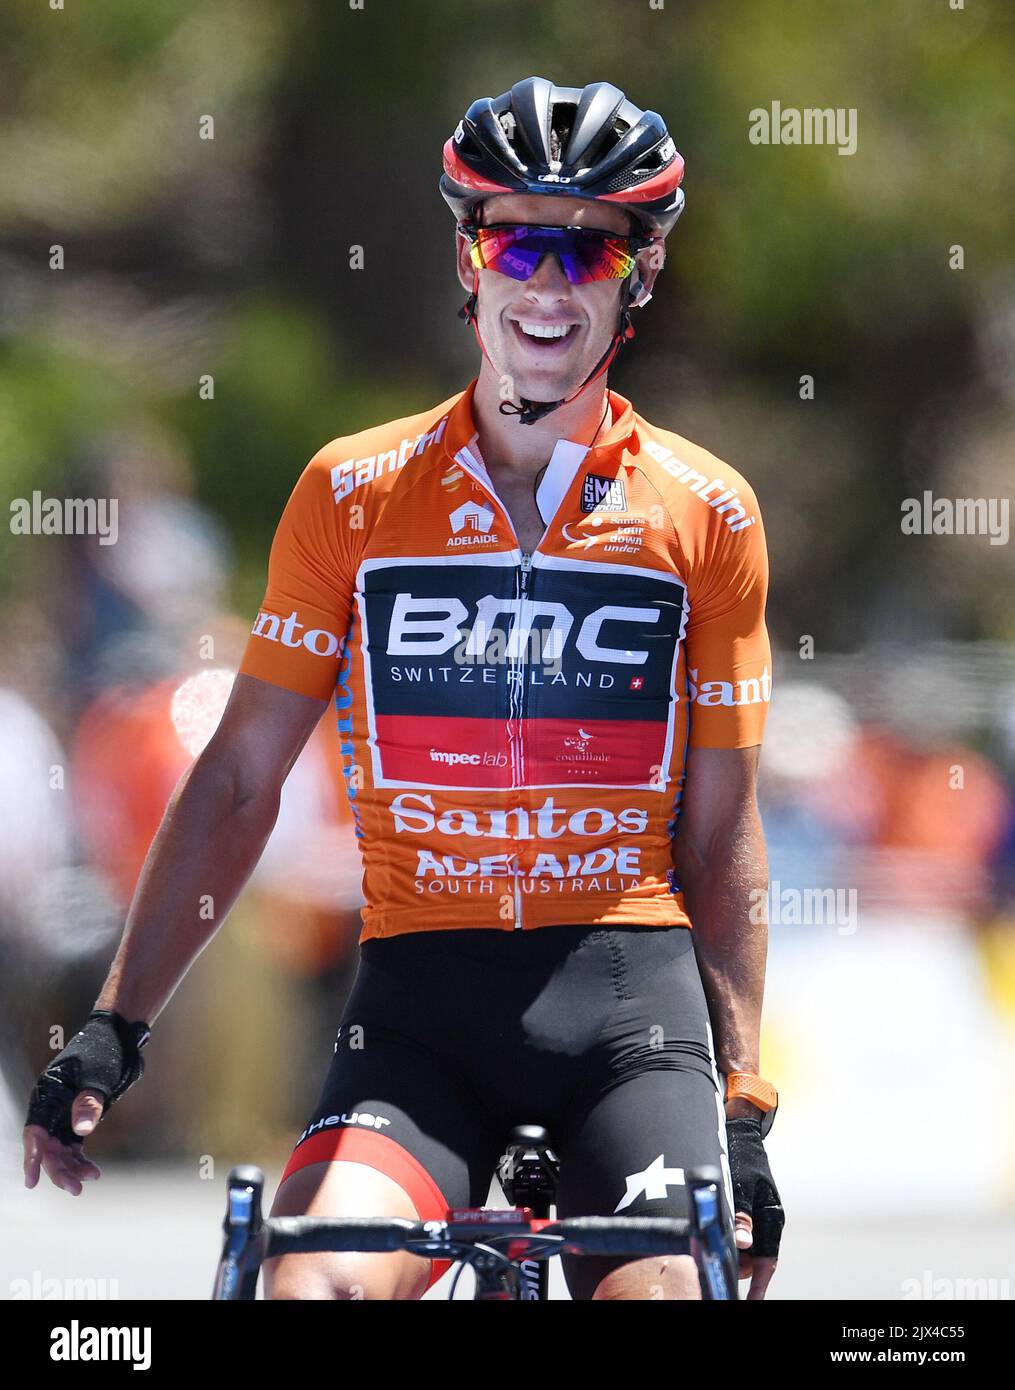 Il leader della gara Richie Porte del team BMC Racing sorride dopo aver  vinto la quinta tappa del Tour Down Under su Willunga Hill nei pressi di  Adelaide, sabato 21 gennaio 2017. (